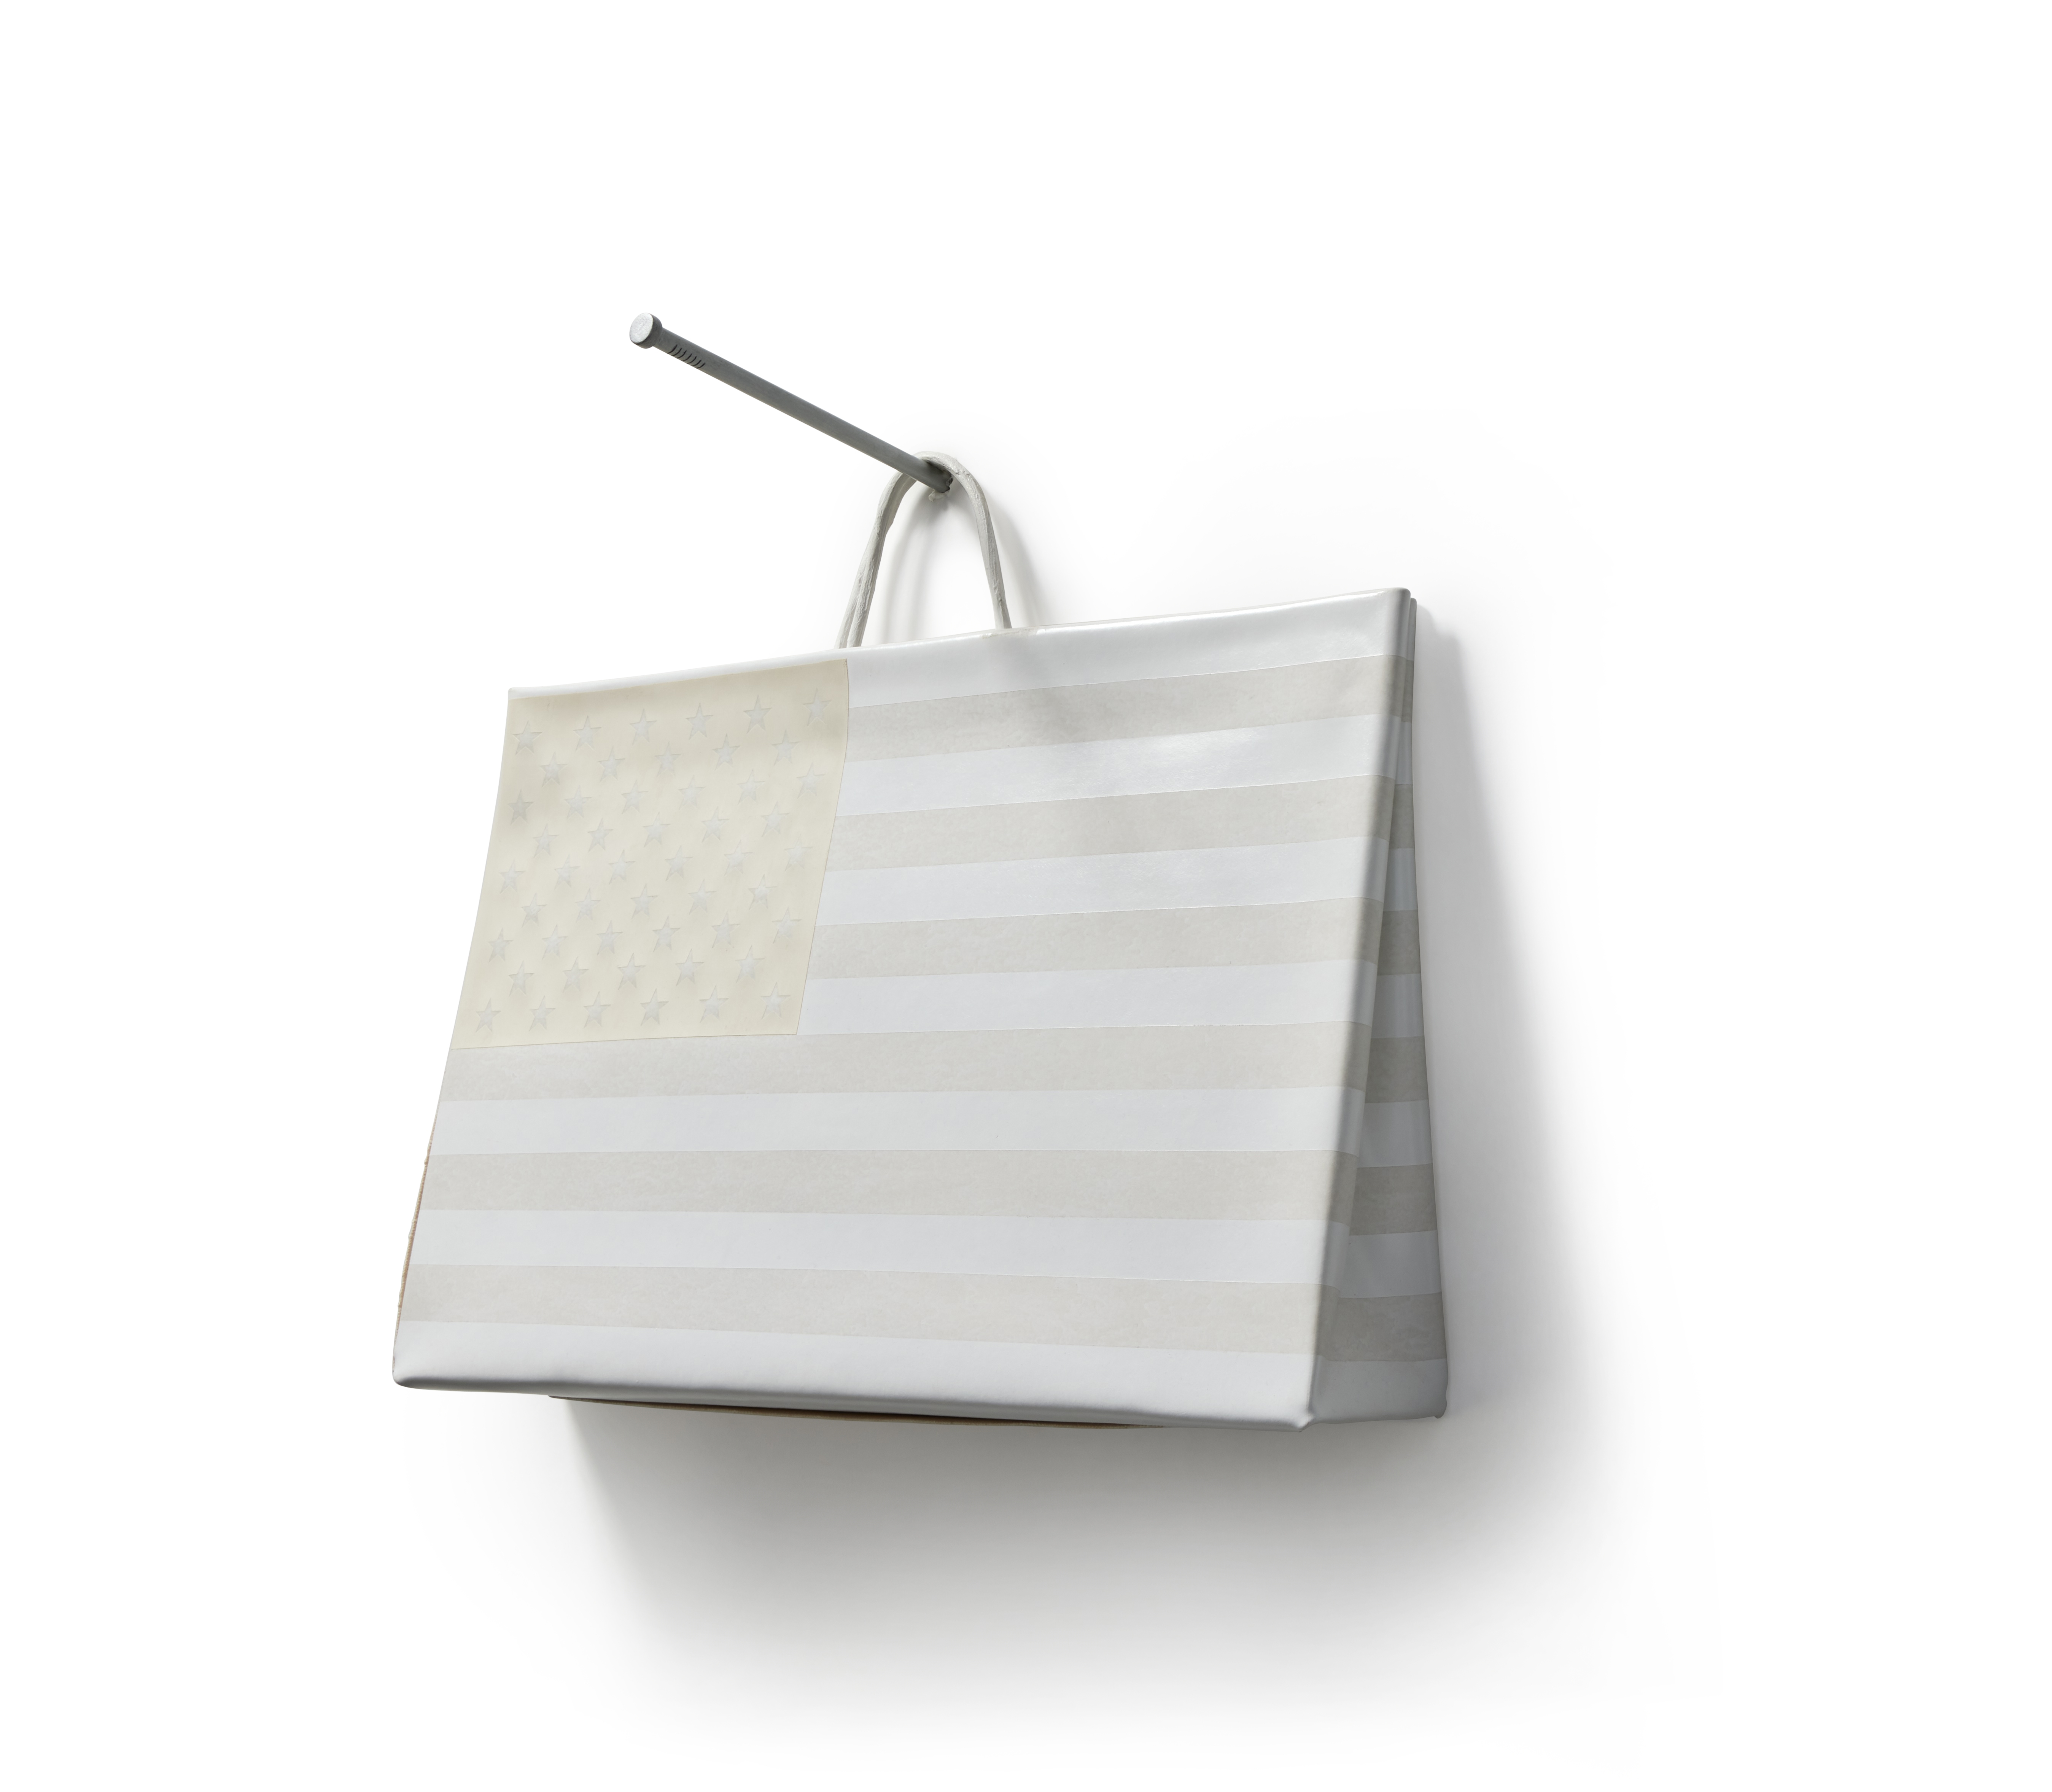 Jonathan Seliger Tiffany Bag For Sale at 1stDibs